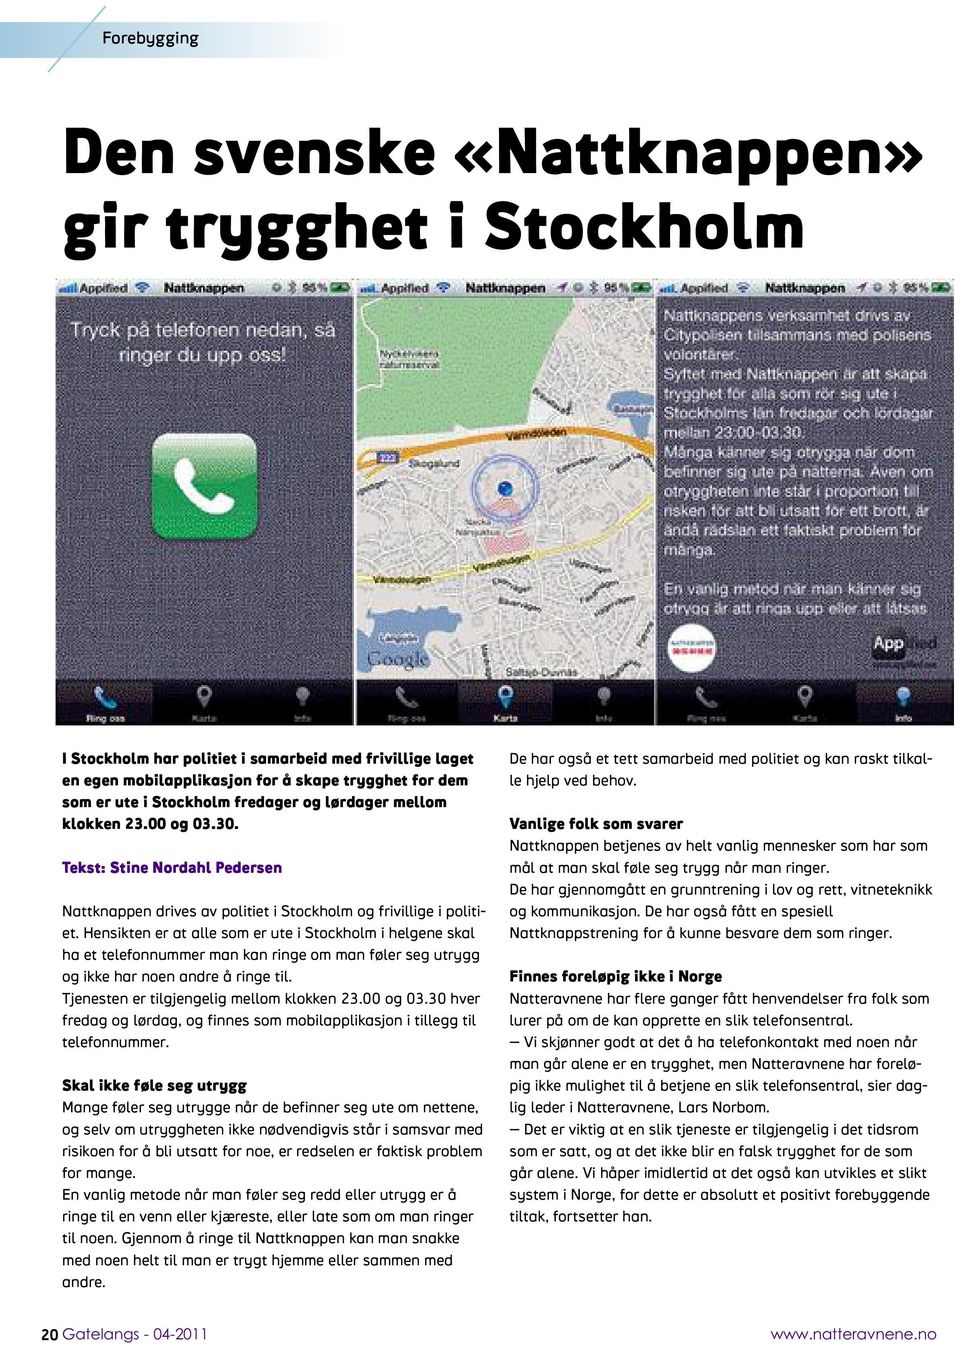 Hensikten er at alle som er ute i Stockholm i helgene skal ha et telefonnummer man kan ringe om man føler seg utrygg og ikke har noen andre å ringe til. Tjenesten er tilgjengelig mellom klokken 23.